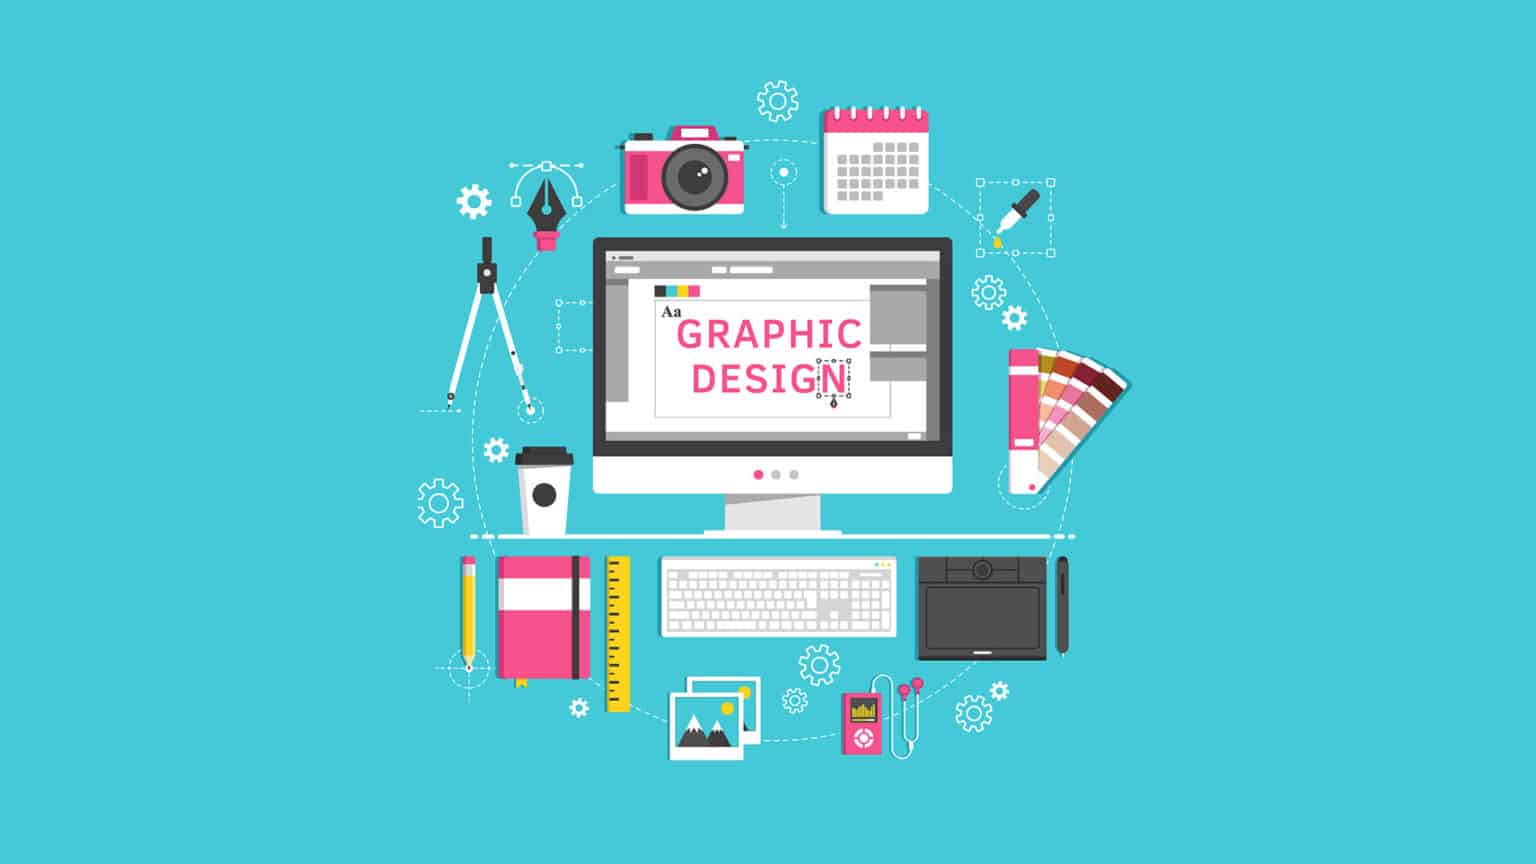 Graphic-Design-concept